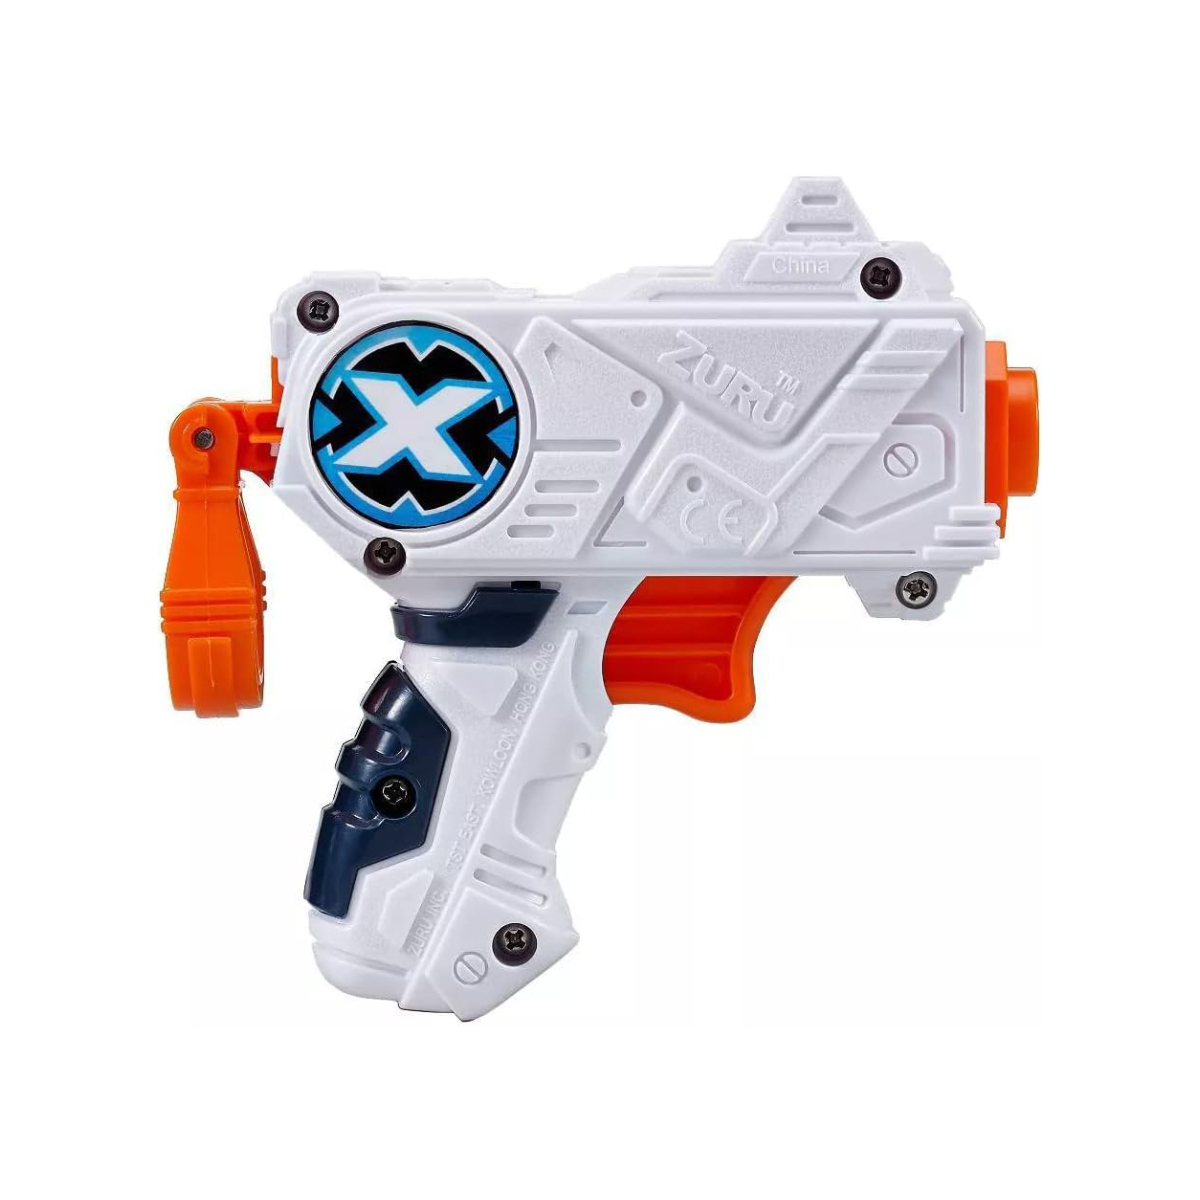  Pistola de juguete para dardos Nerf, lanzadores automáticos de  juguete de espuma y pistolas con 3 modos de ráfaga, armas de juguete  personalizadas para niños, incluye 100 dardos de espuma, juguetes